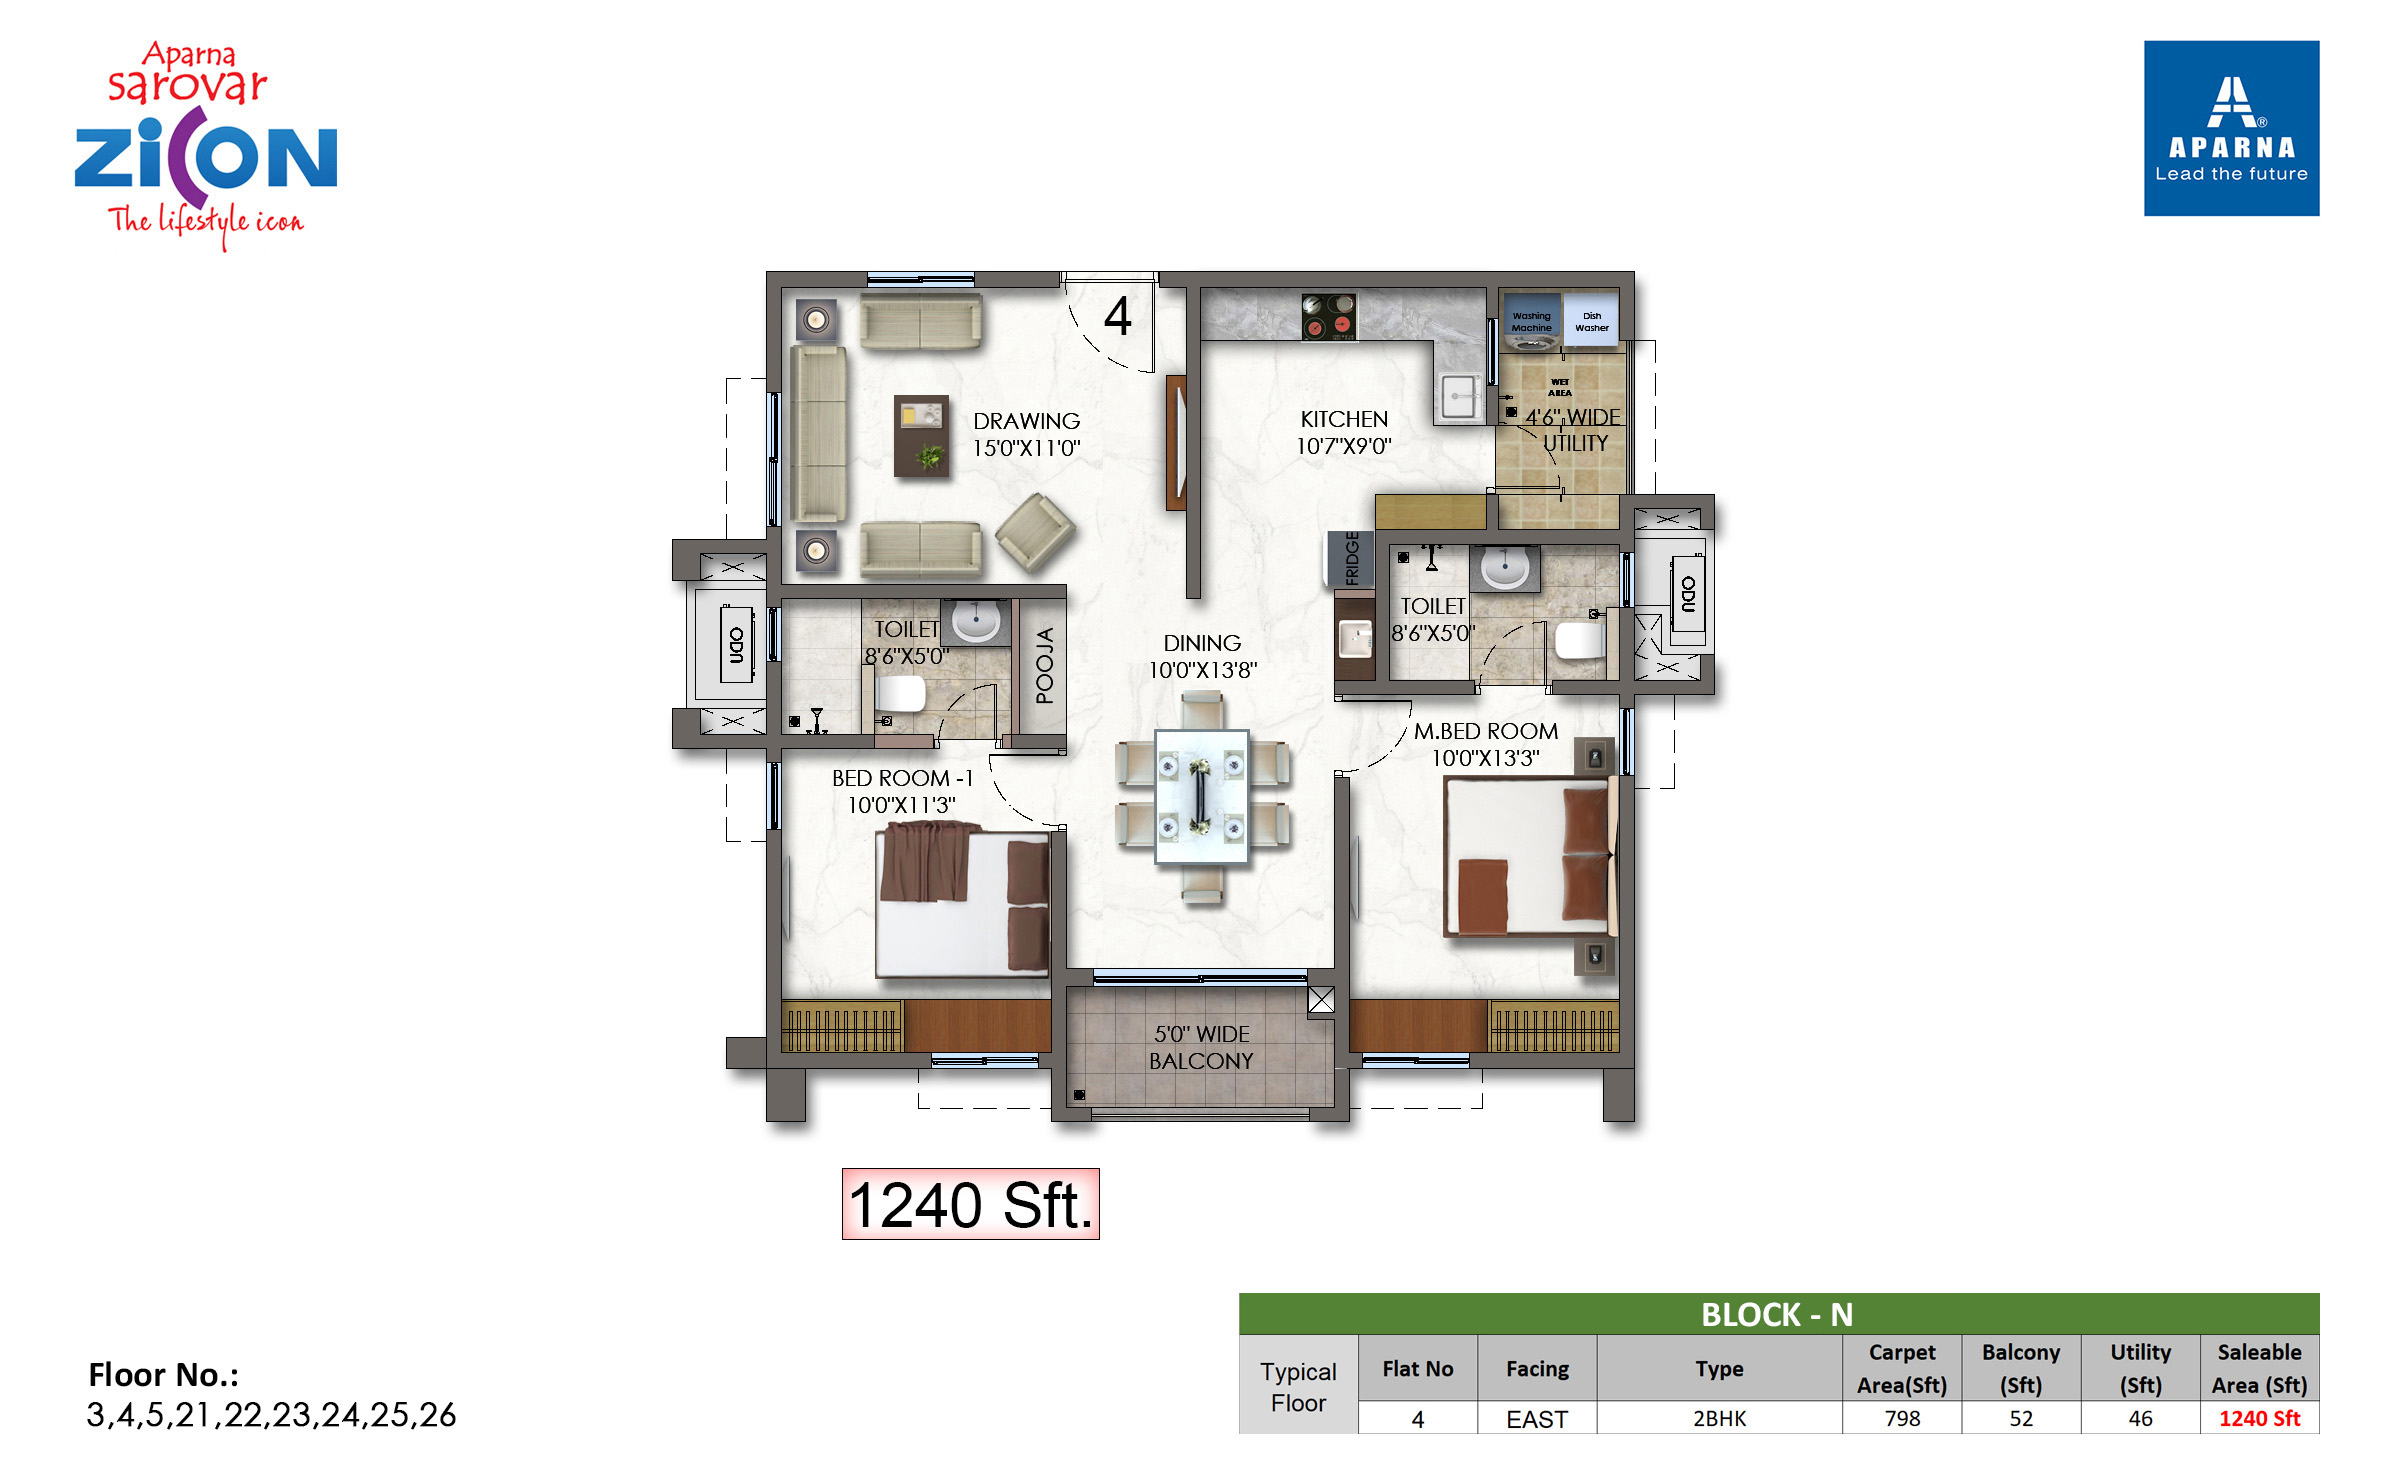 Typical floor plan - 1240